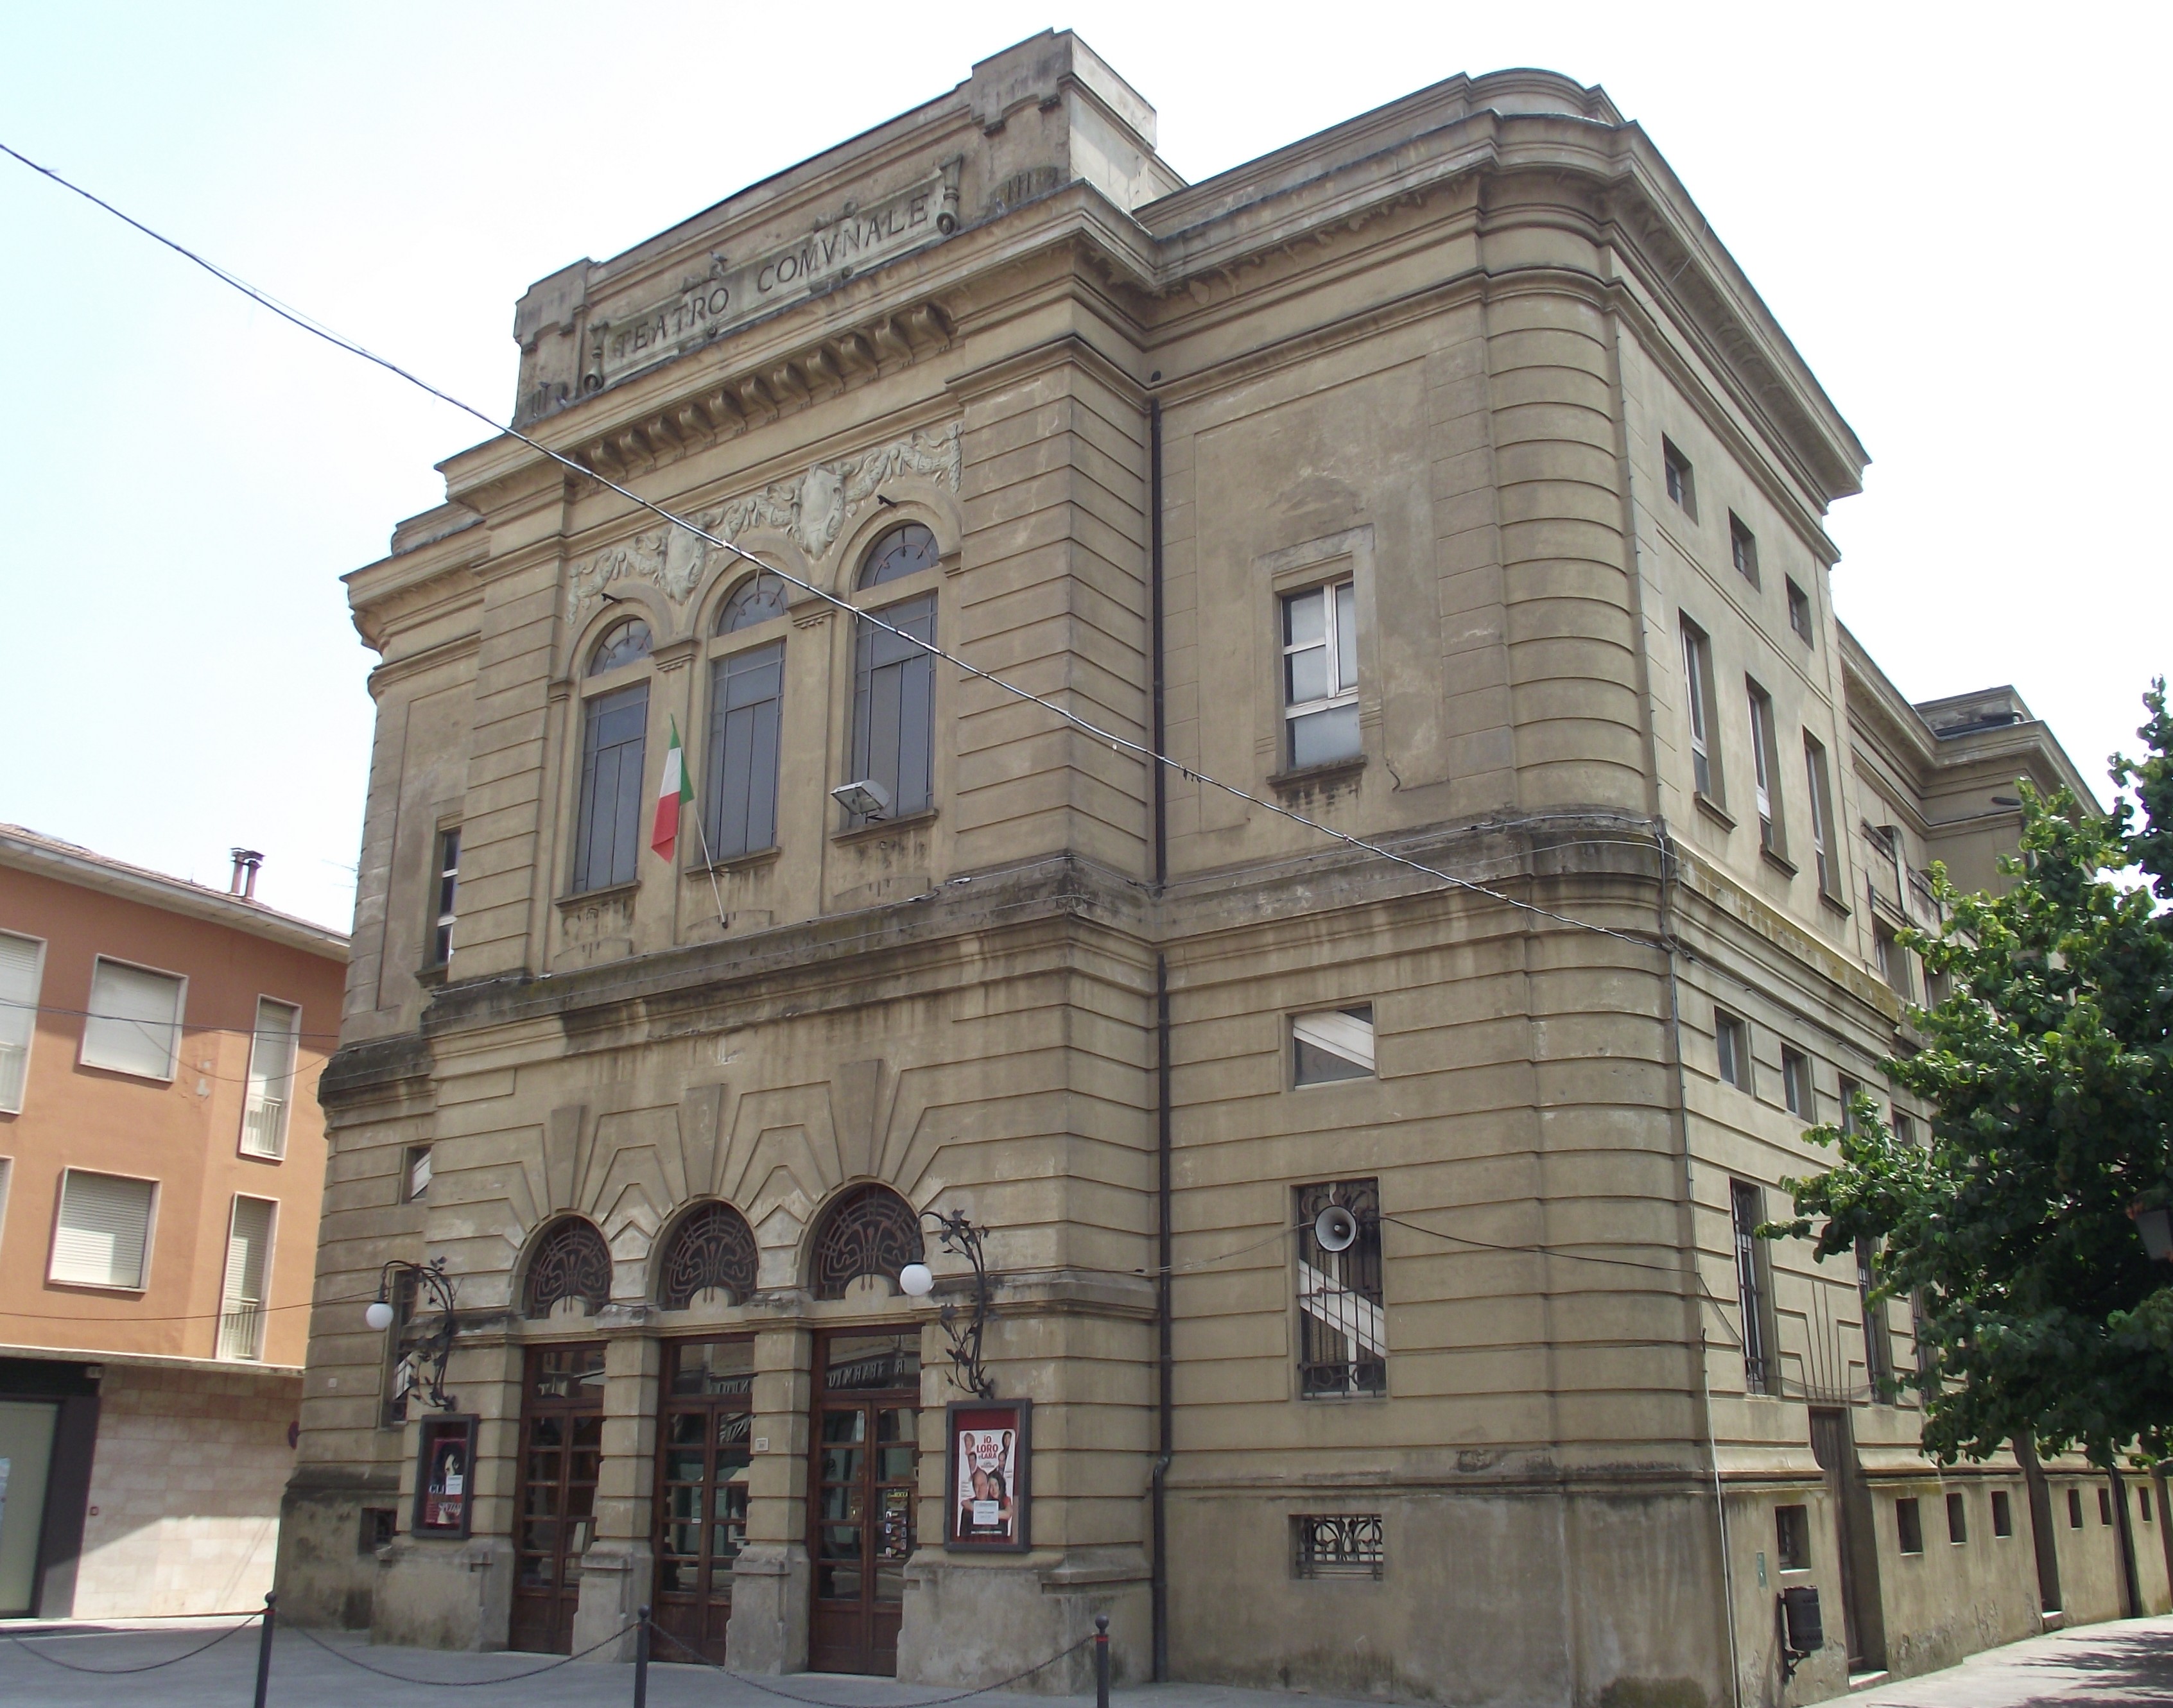 foto: https://upload.wikimedia.org/wikipedia/commons/4/4d/Teatro_comunale_di_San_Felice_sul_Panaro_%28MO%29.JPG